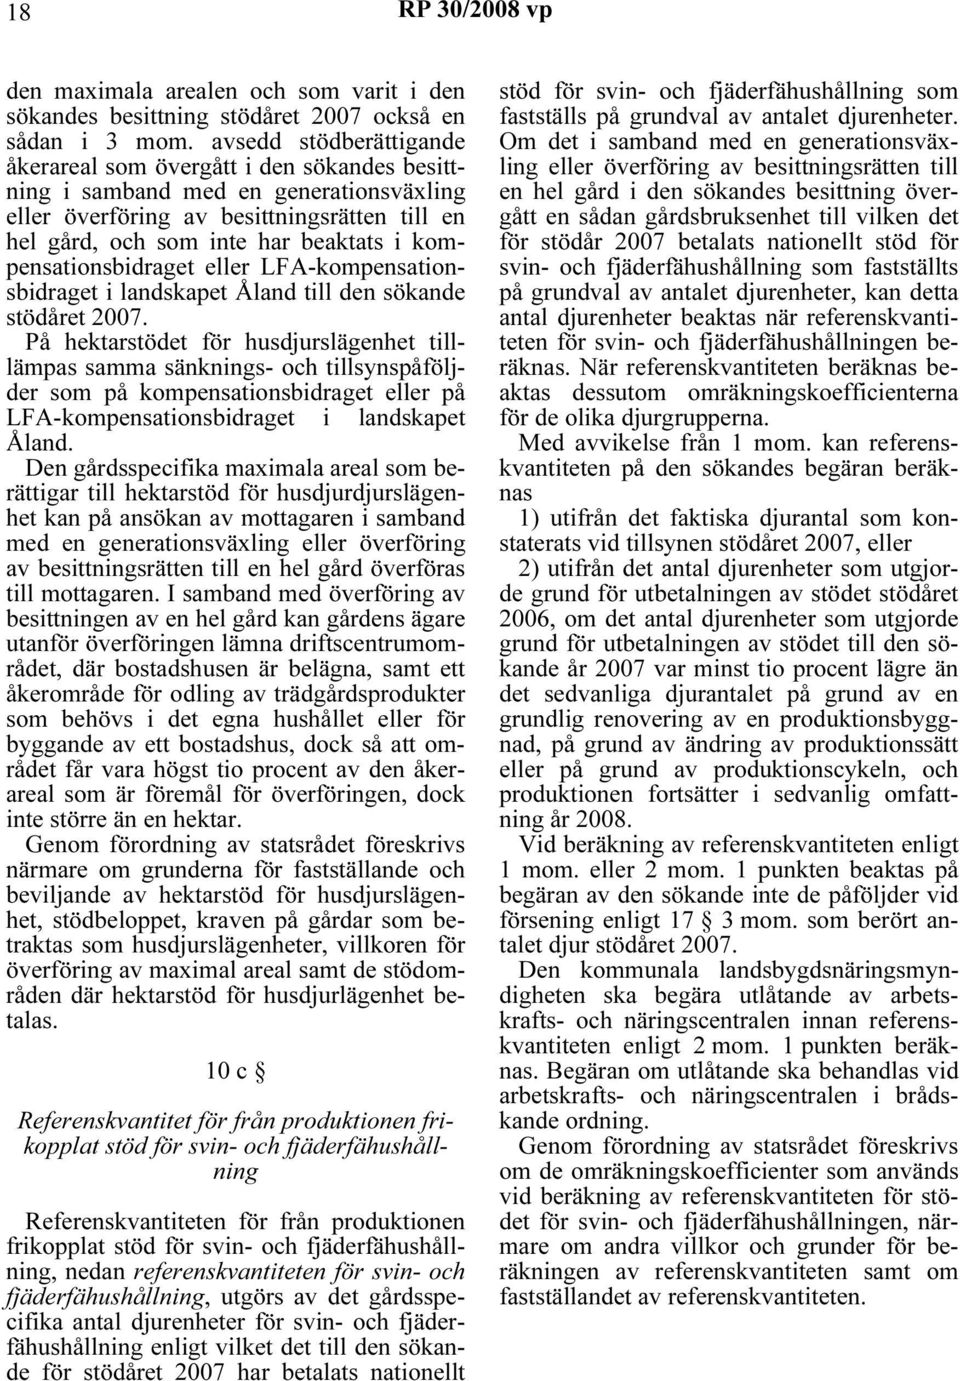 kompensationsbidraget eller LFA-kompensationsbidraget i landskapet Åland till den sökande stödåret 2007.